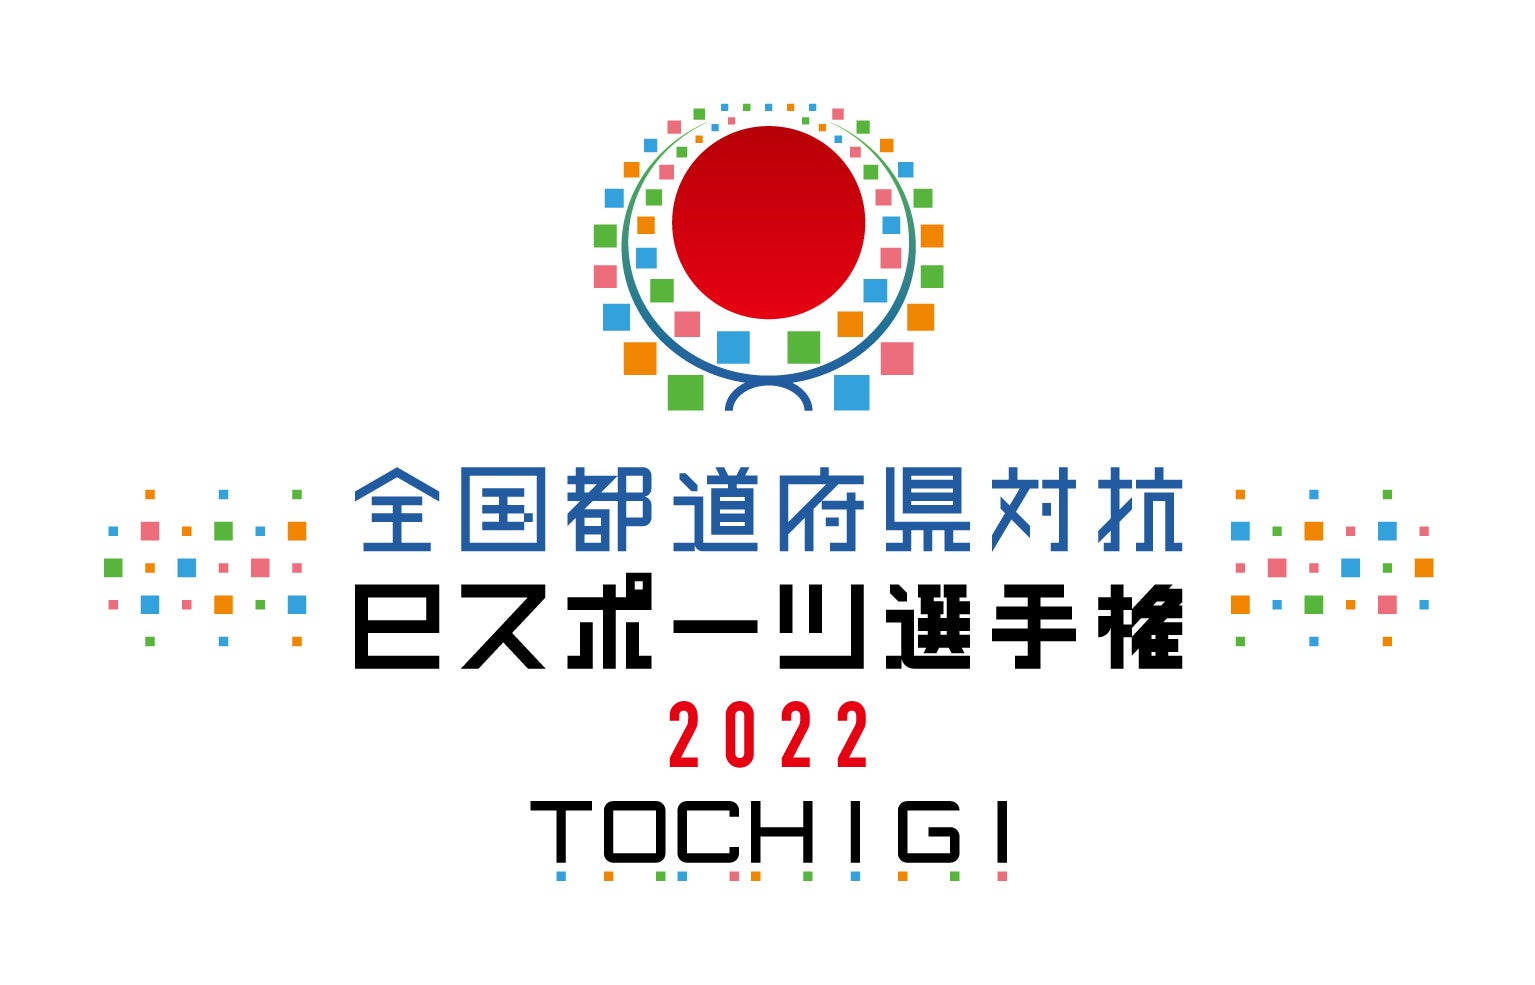 「全国都道府県対抗eスポーツ選手権 2022 TOCHIGI」 優勝都道府県予想Twitterキャンペーンを本日10月3日から開催！